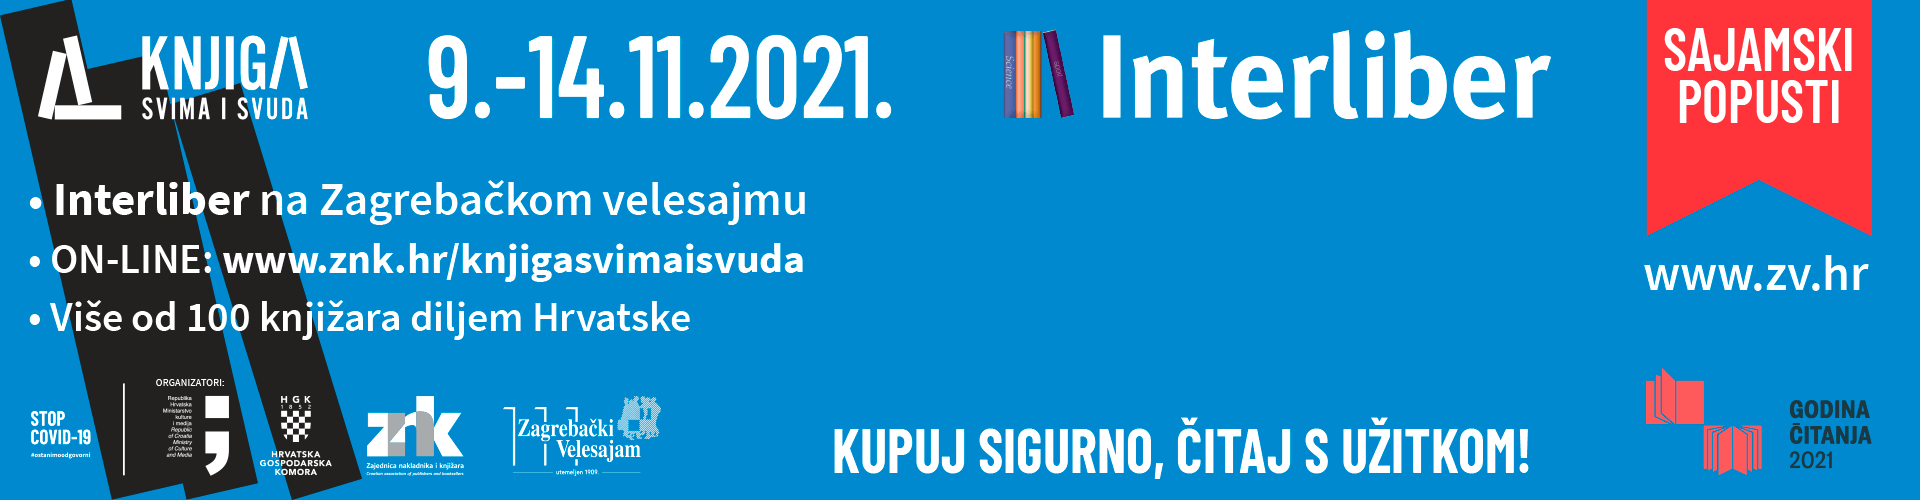 Interliber online & Knjiga svima i svuda 2021.